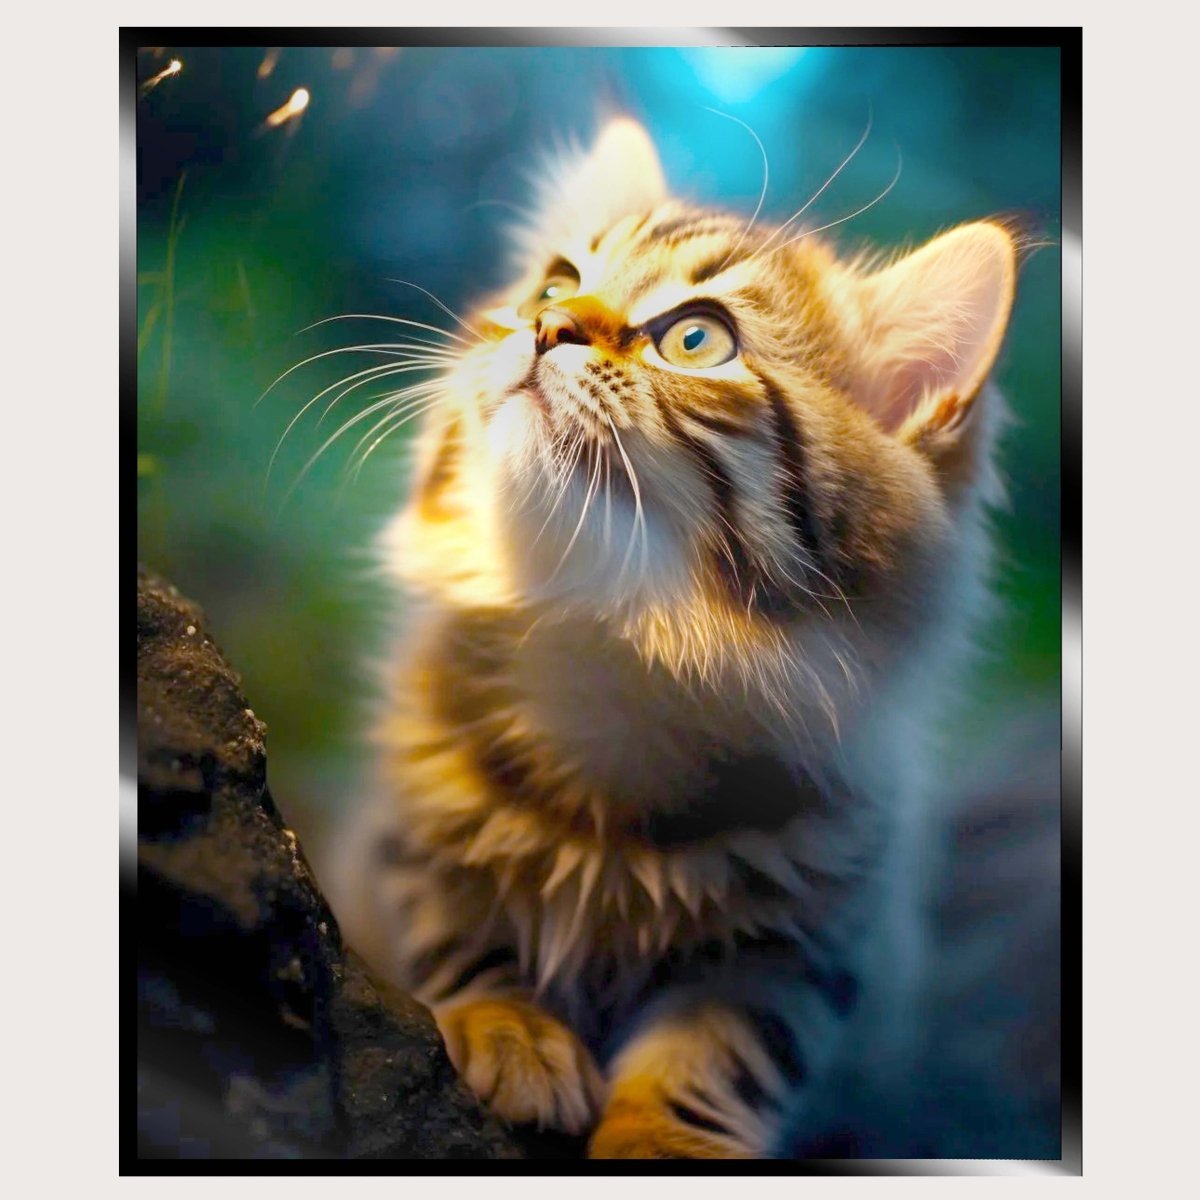 Illuminated Wall Art - Kitten Looking Up - madaboutneon